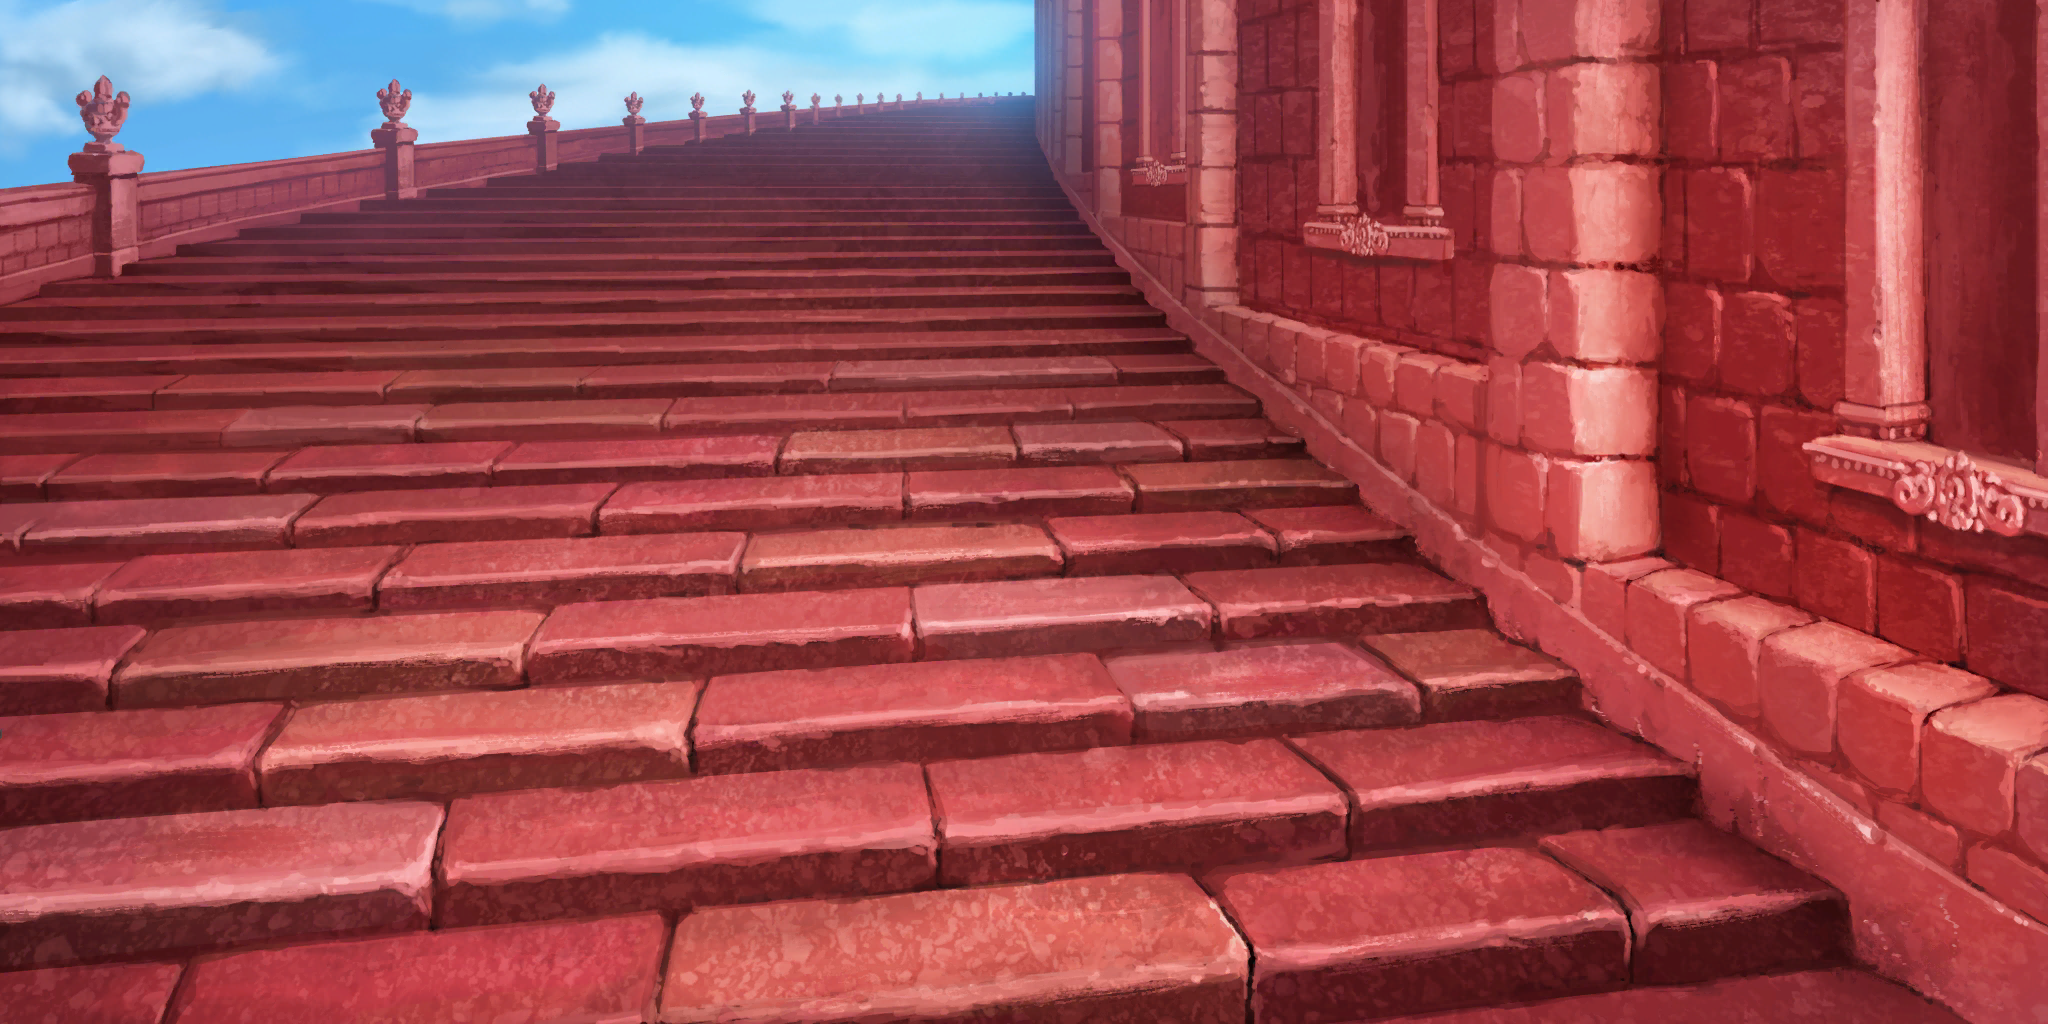 Touhou LostWord - Scarlet Devil Tower Stairs